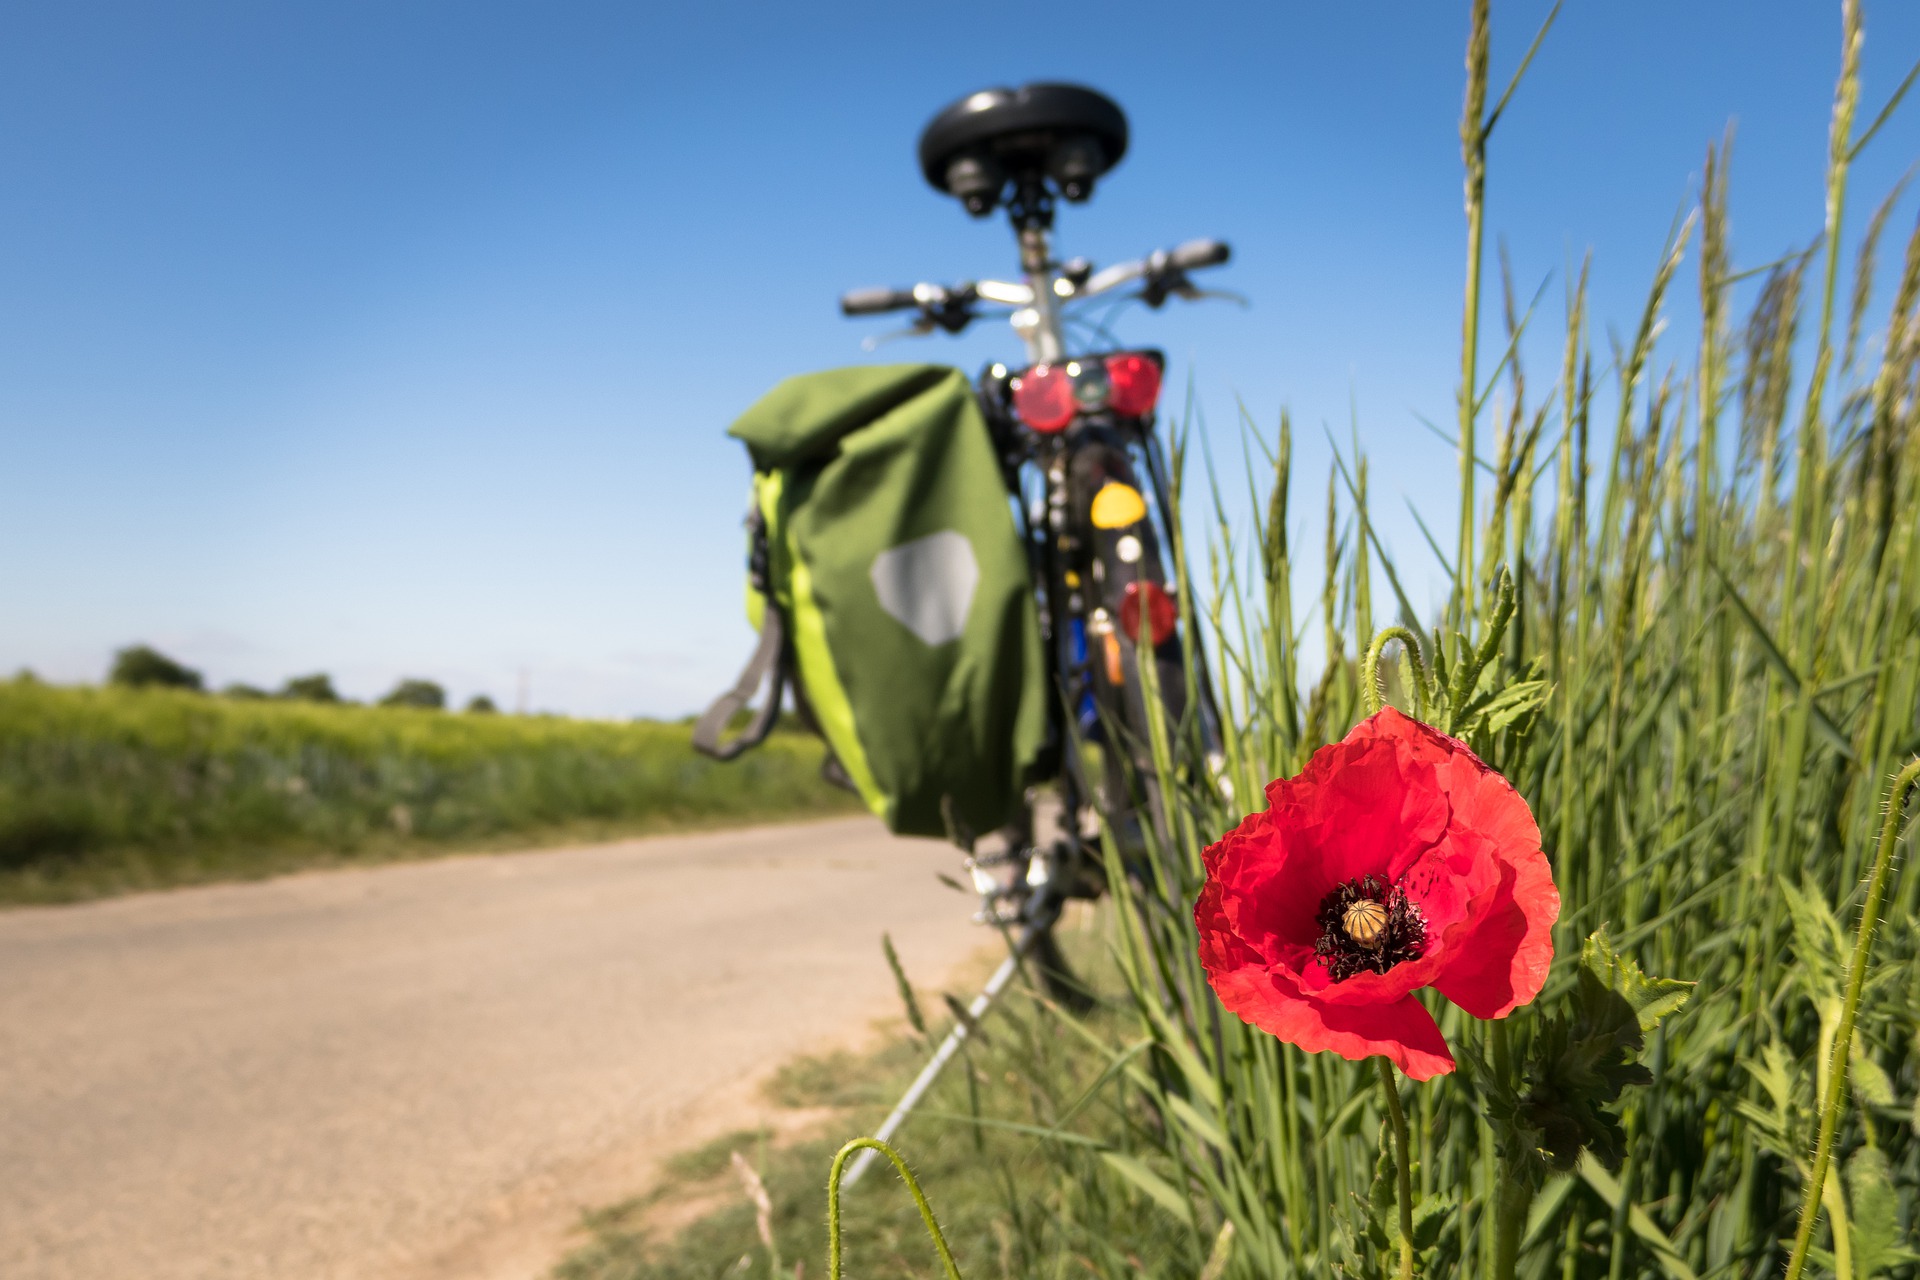 Ścieżki rowerowe w okolicy Orzesza – gdzie warto pojechać?